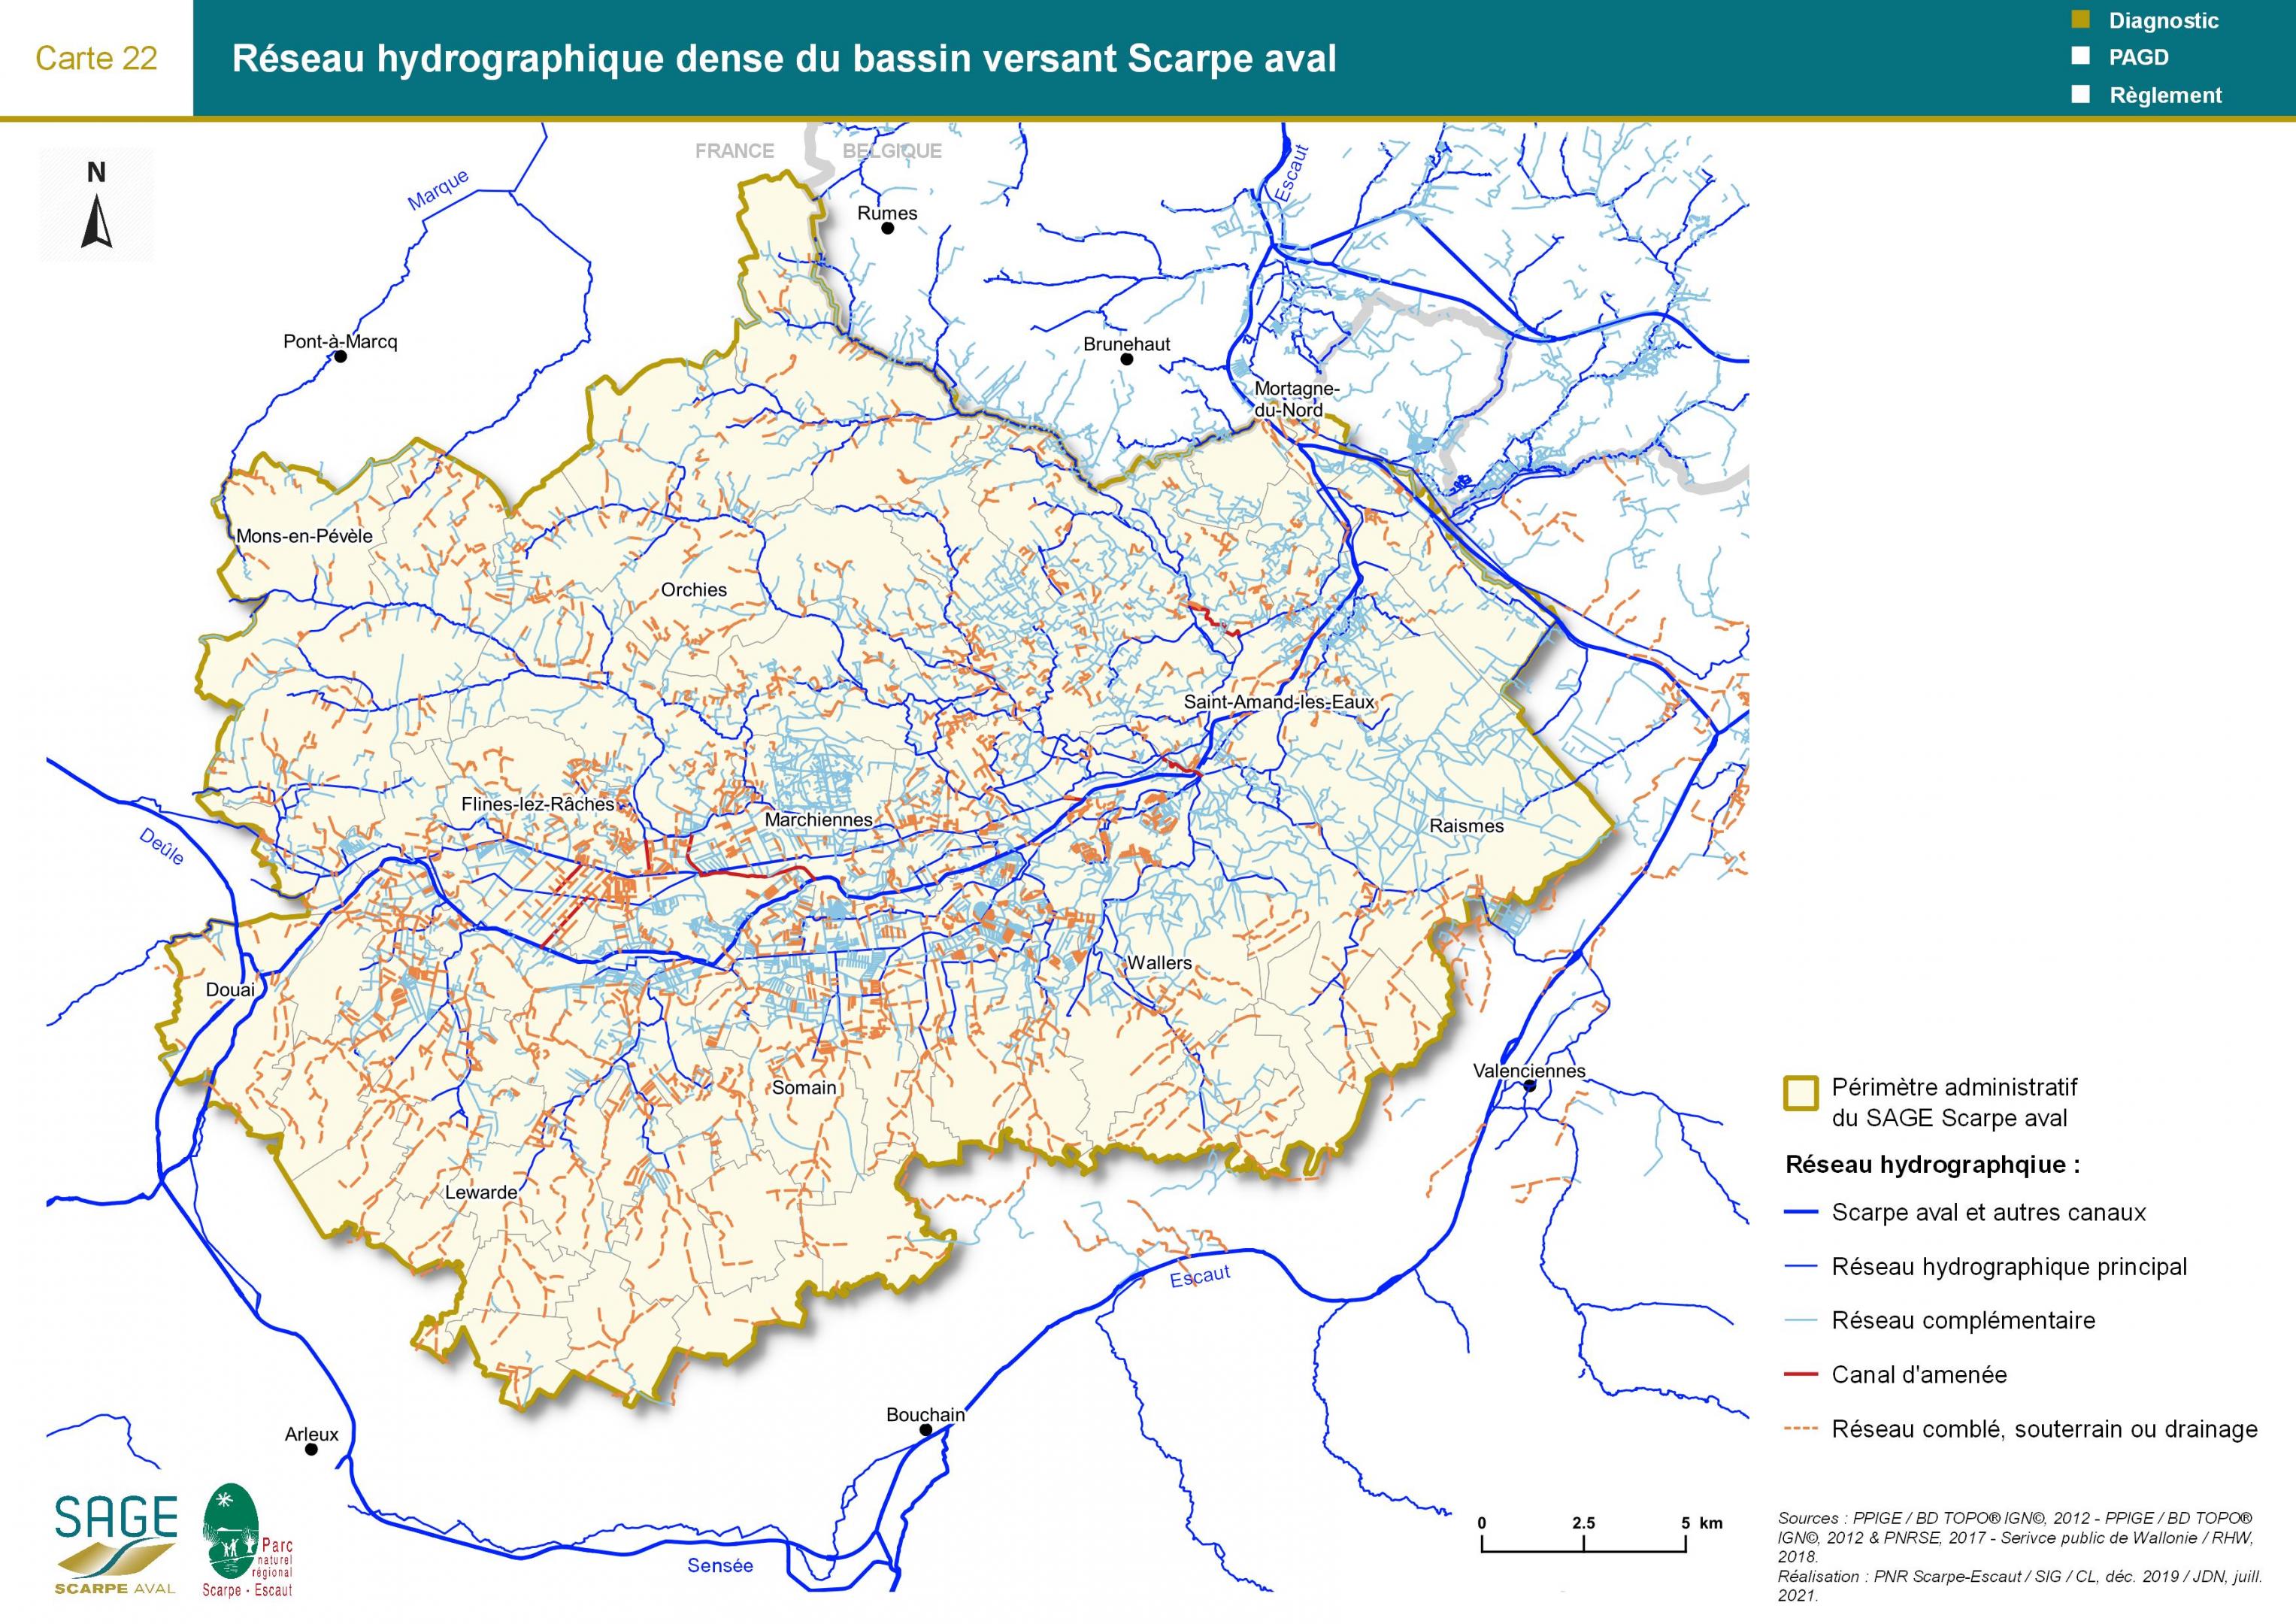 Etat des lieux - Carte 22 : Réseau hydrographique dense du bassin versant Scarpe aval